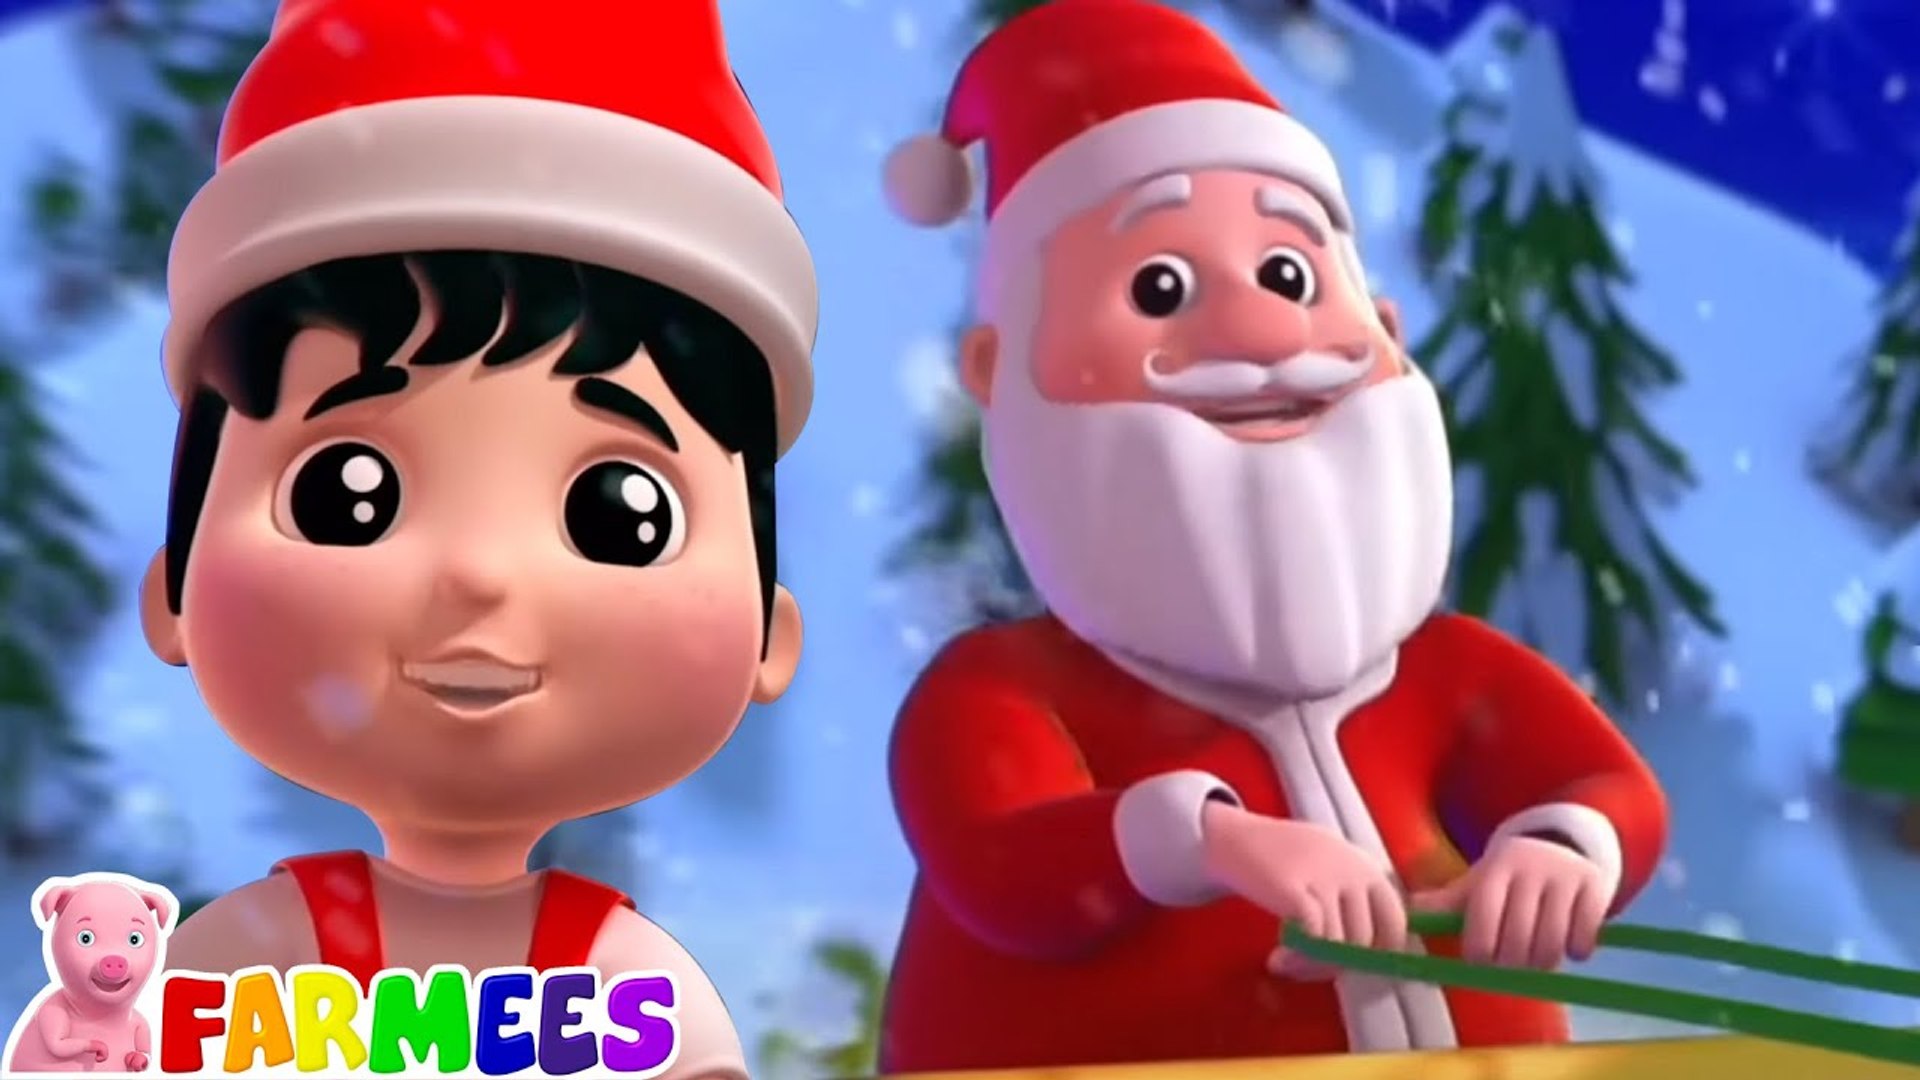 Jingle Bells | Nursery Rhymes And Kids Songs By Farmees - video Dailymotion